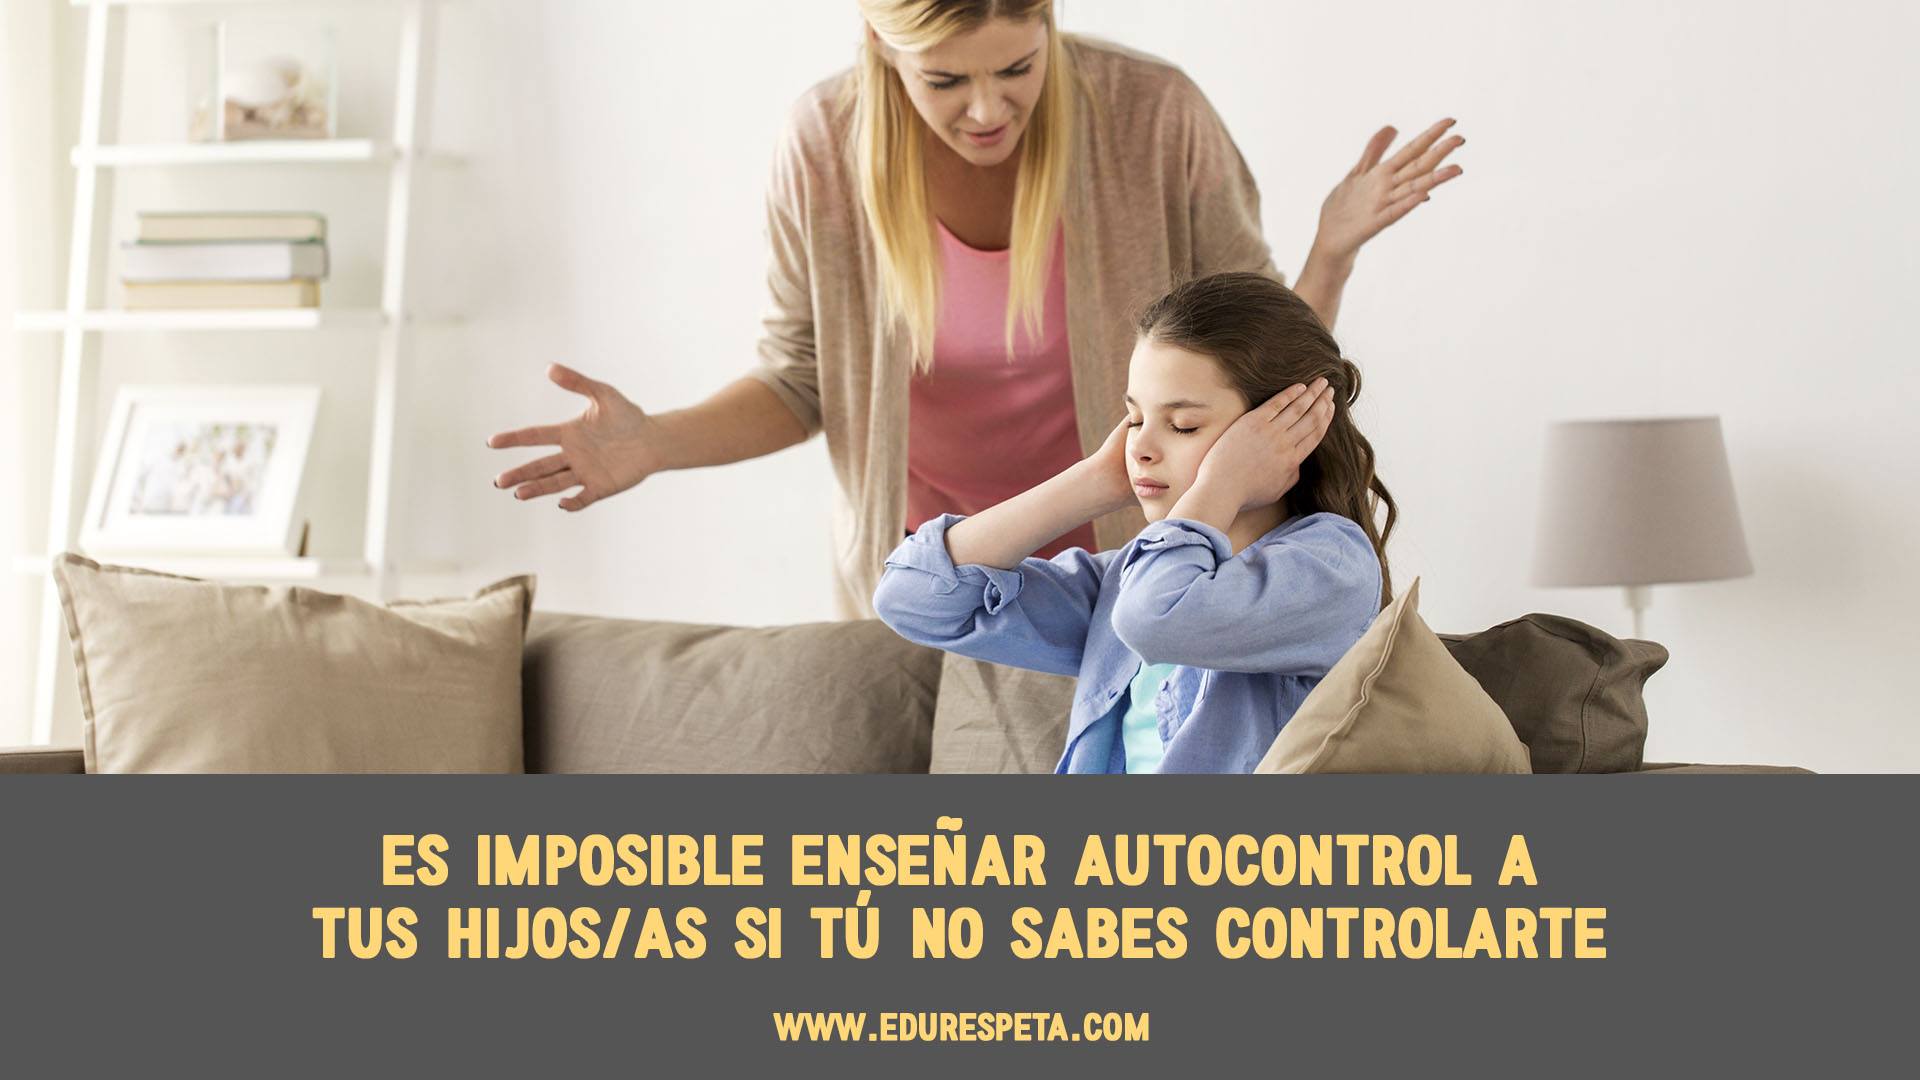 Es imposible enseñar autocontrol a tus hijos/as si tú no sabes controlarte